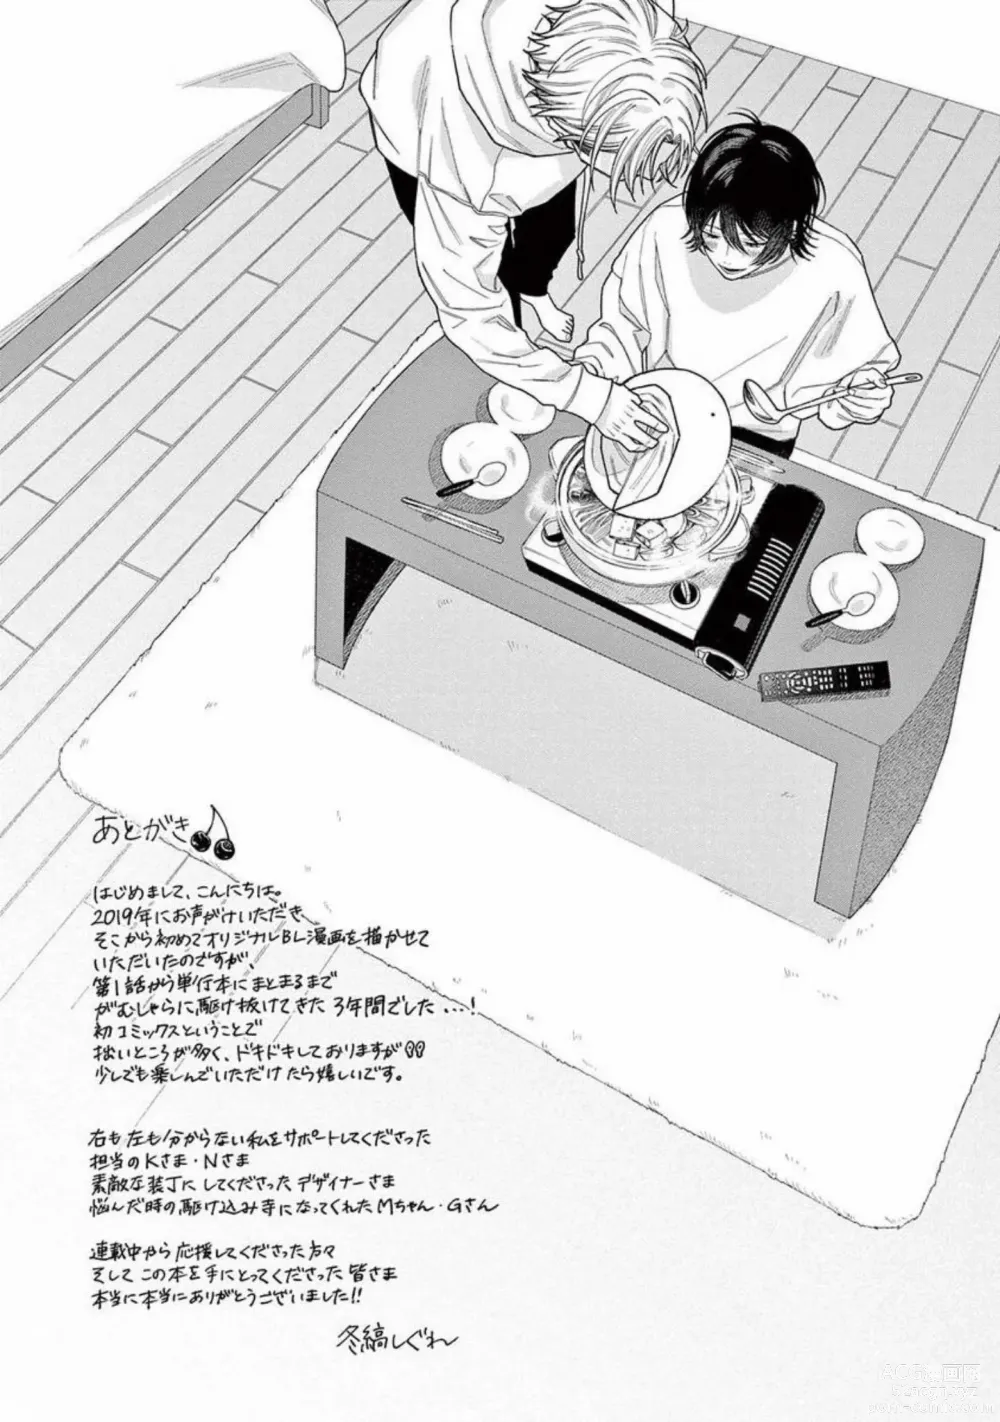 Page 201 of manga Junjou de Nani ga Warui - Whats wrong with being innocent?